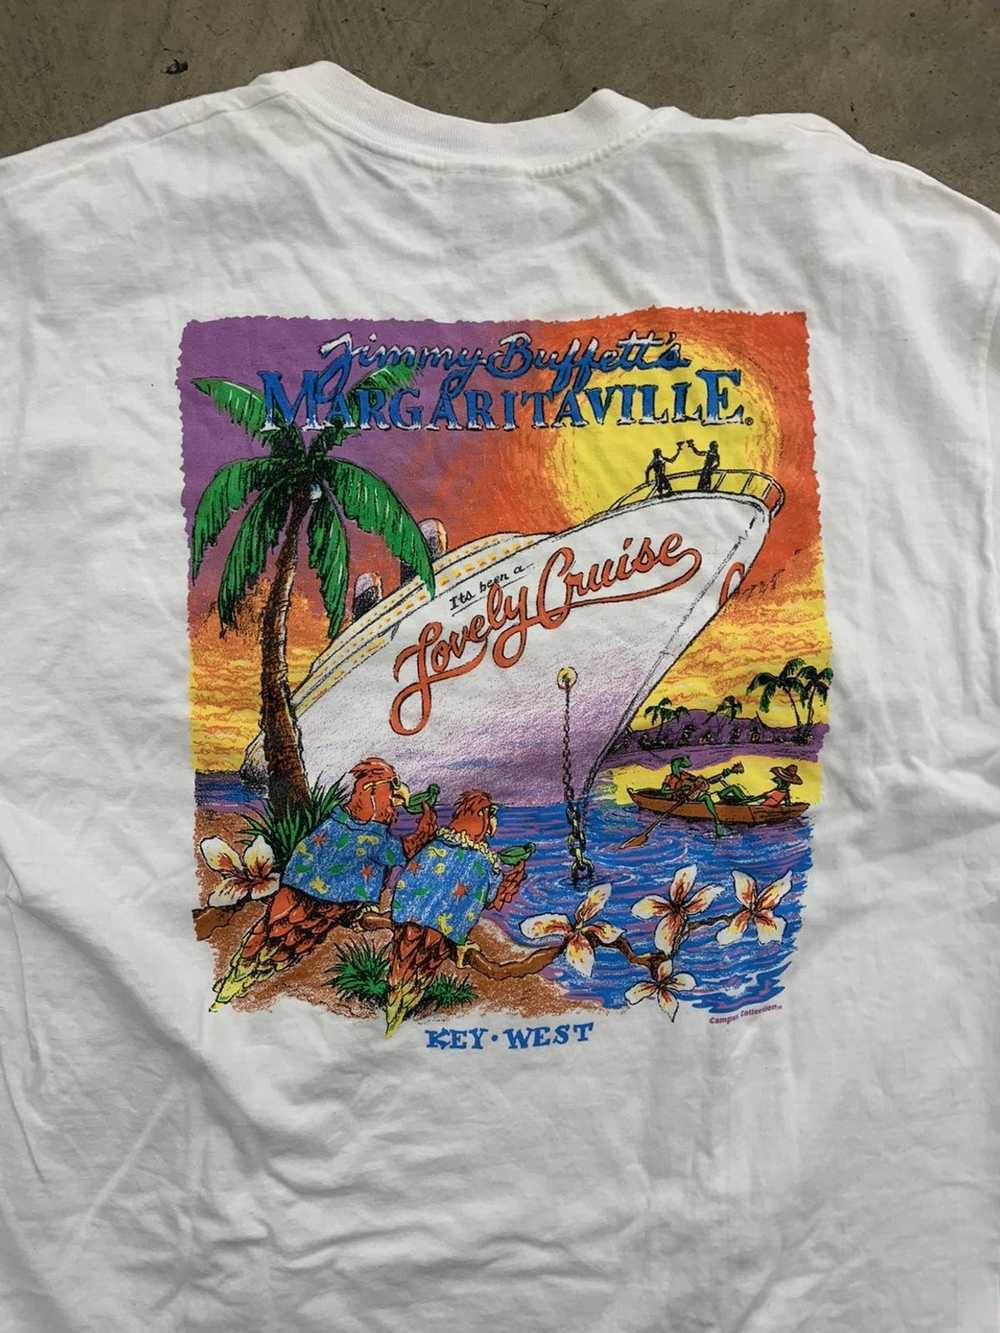 Vintage Vintage 1990s Margarita Ville t shirt XL - image 2